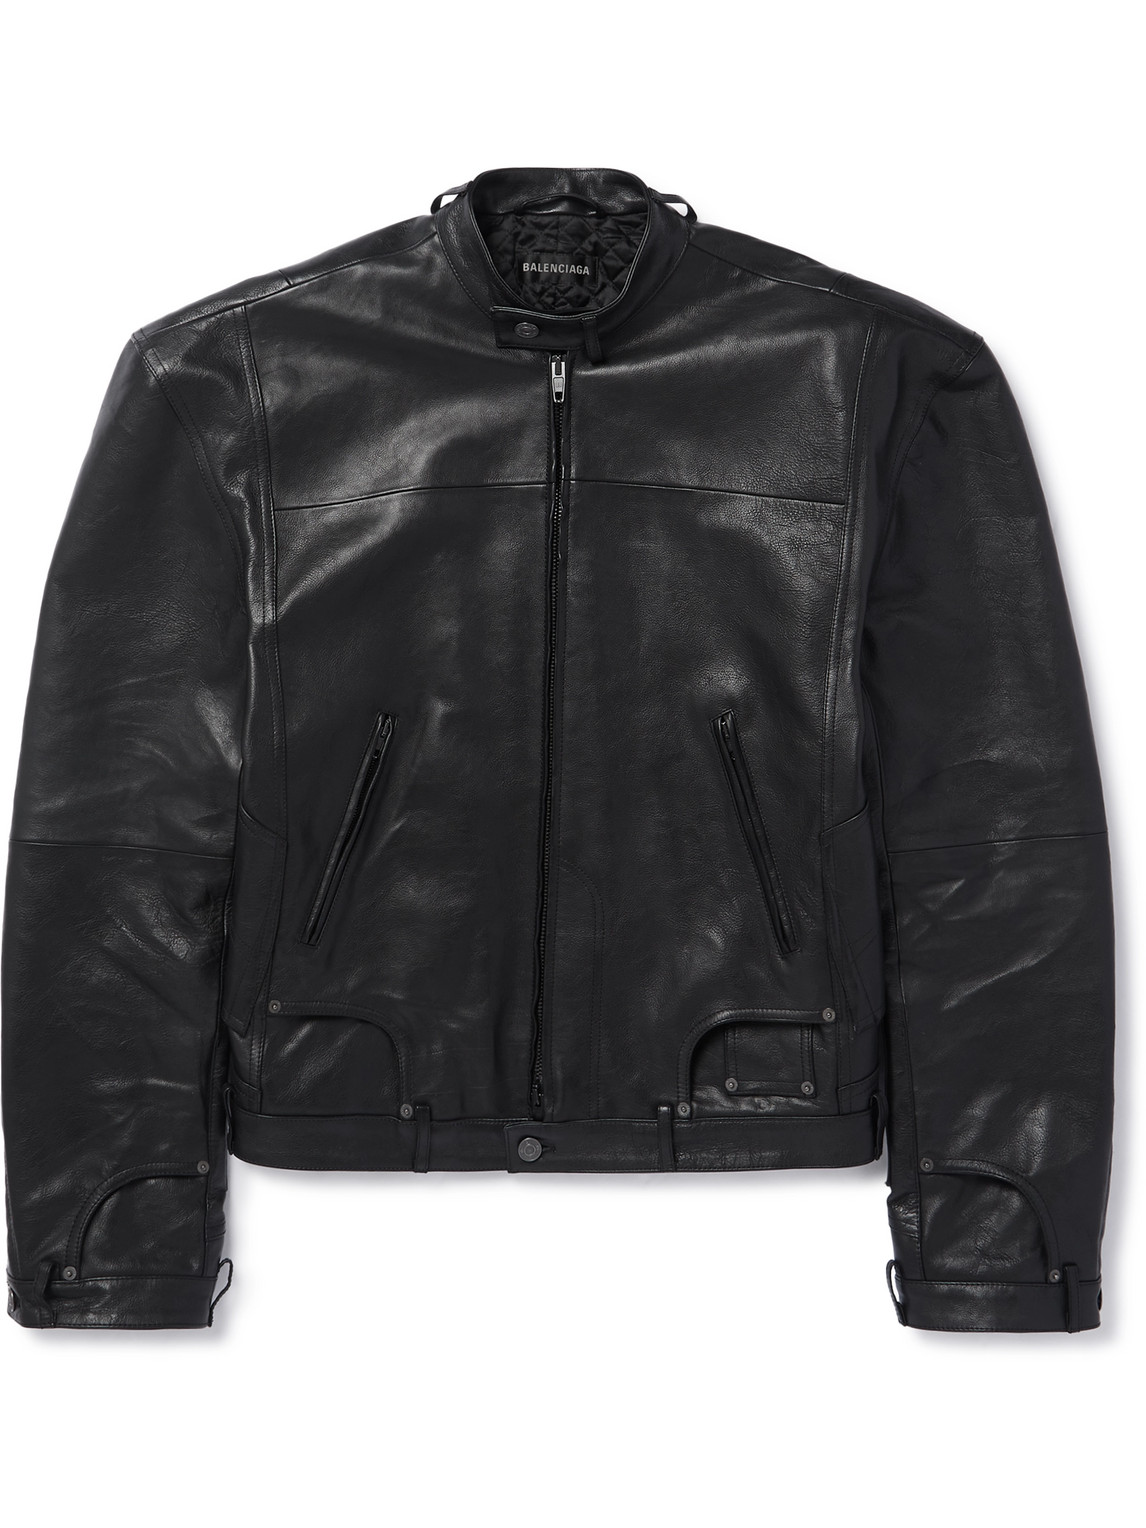 Balenciaga - Leather Jacket - Men - Black - 2 von Balenciaga